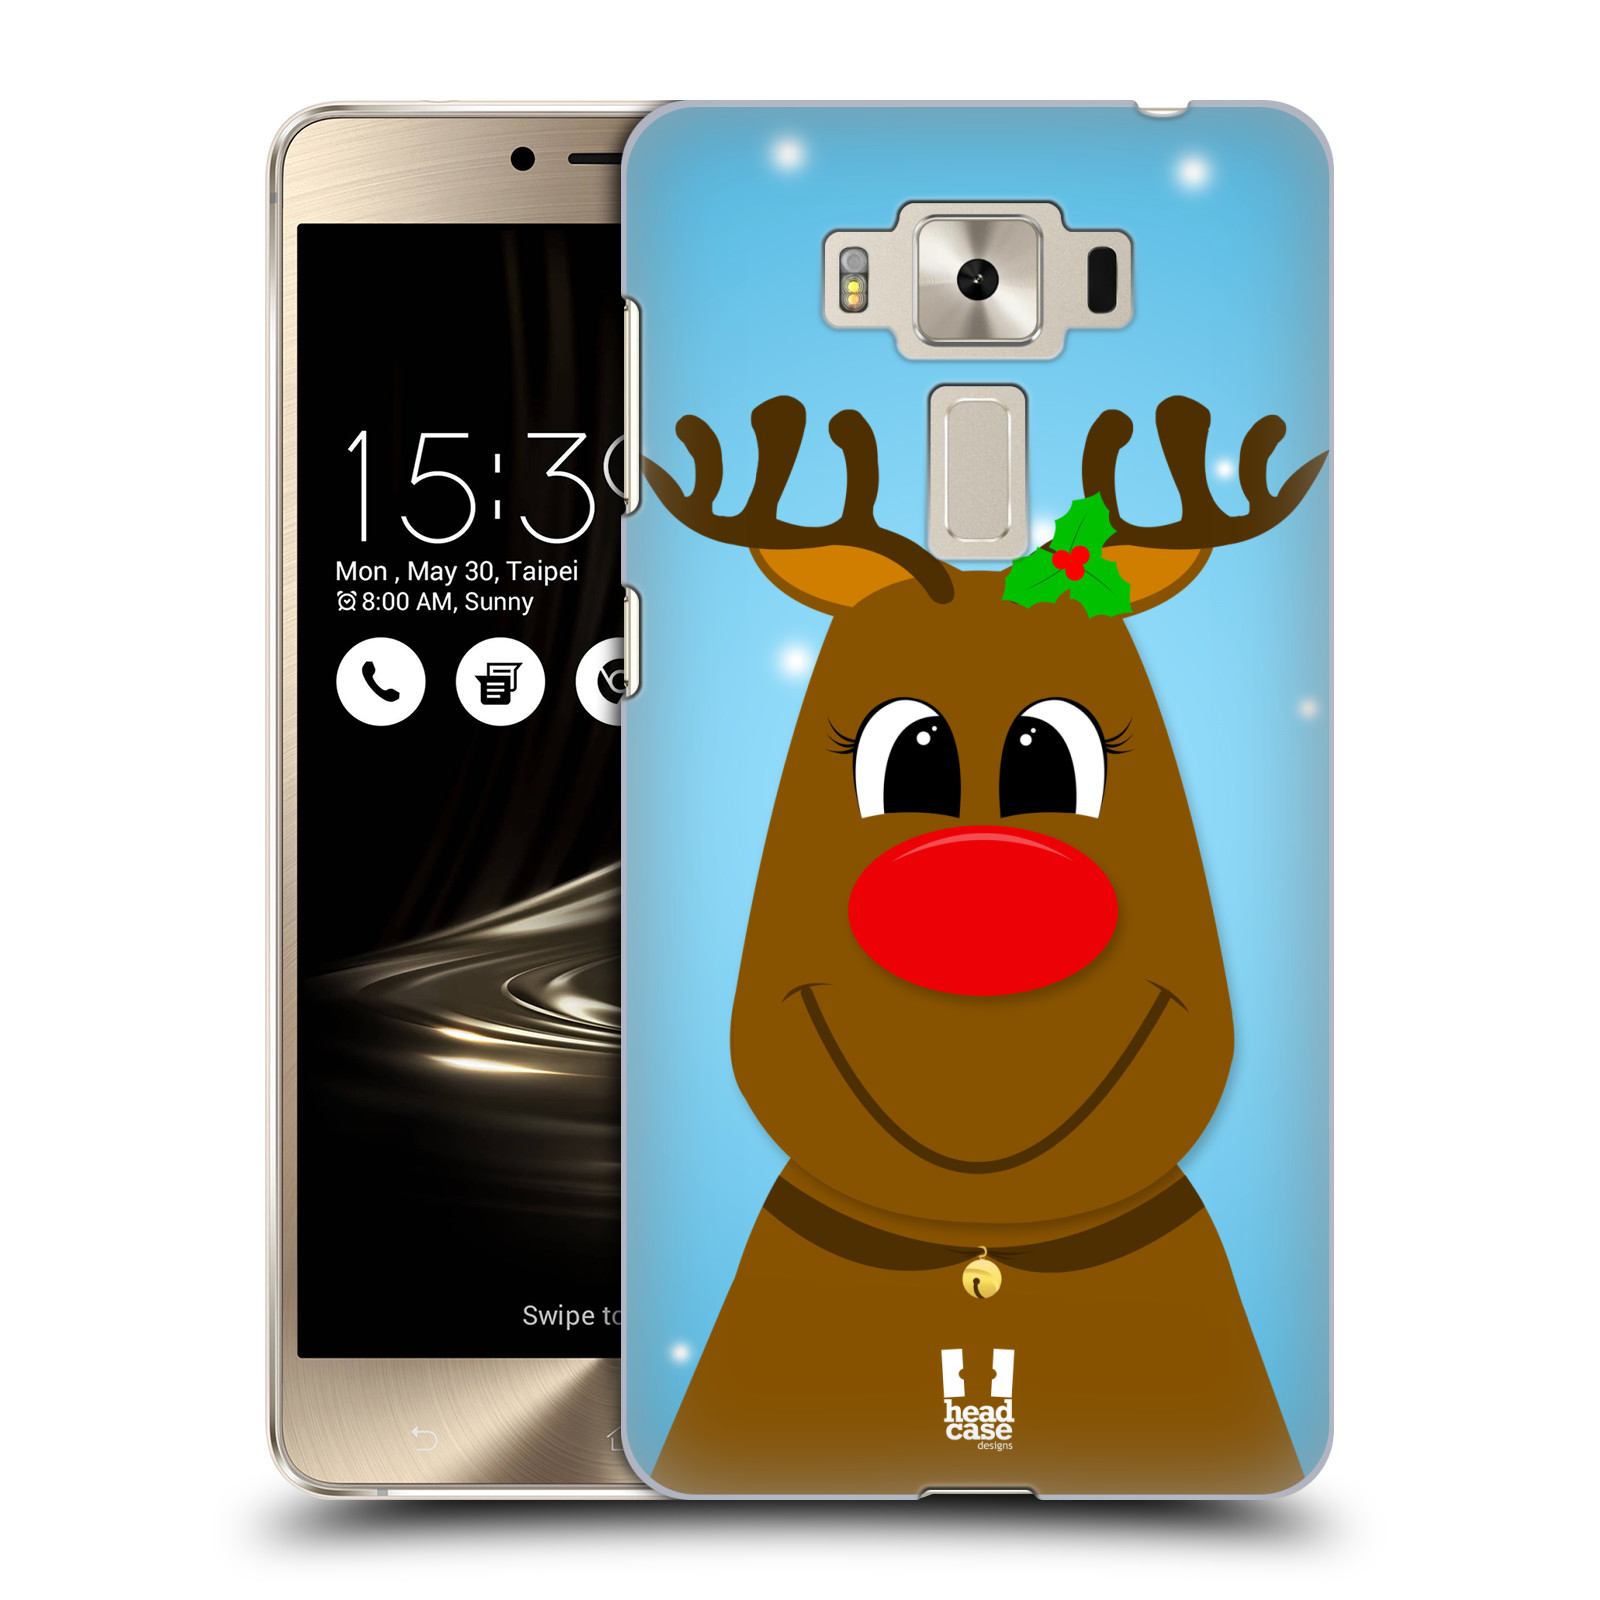 HEAD CASE plastový obal na mobil Asus Zenfone 3 DELUXE ZS550KL vzor Vánoční tváře kreslené SOB RUDOLF